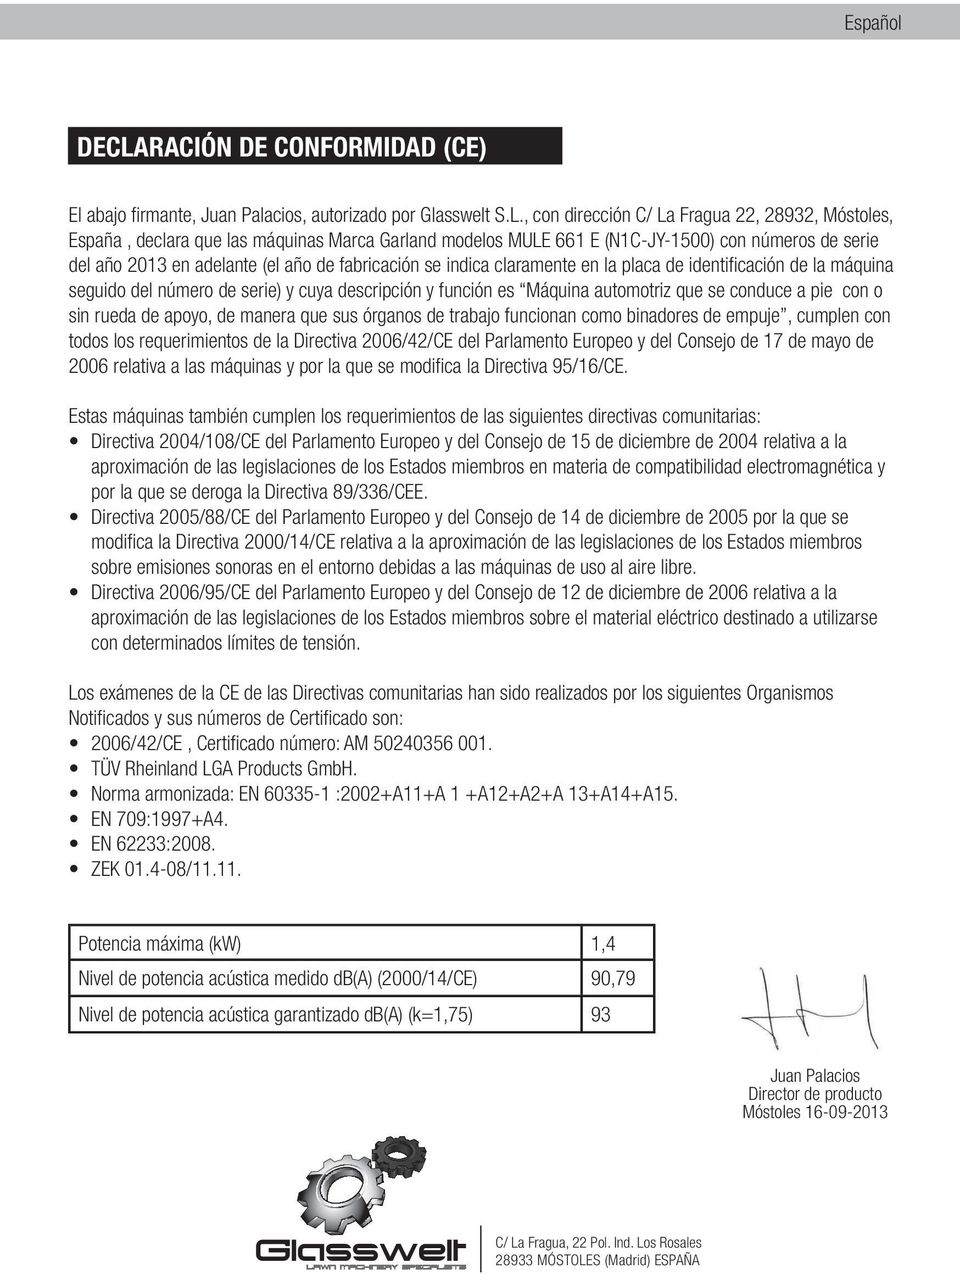 , con dirección C/ La Fragua 22, 28932, Móstoles, España, declara que las máquinas Marca Garland modelos MULE 661 E (N1C-JY-1500) con números de serie del año 2013 en adelante (el año de fabricación